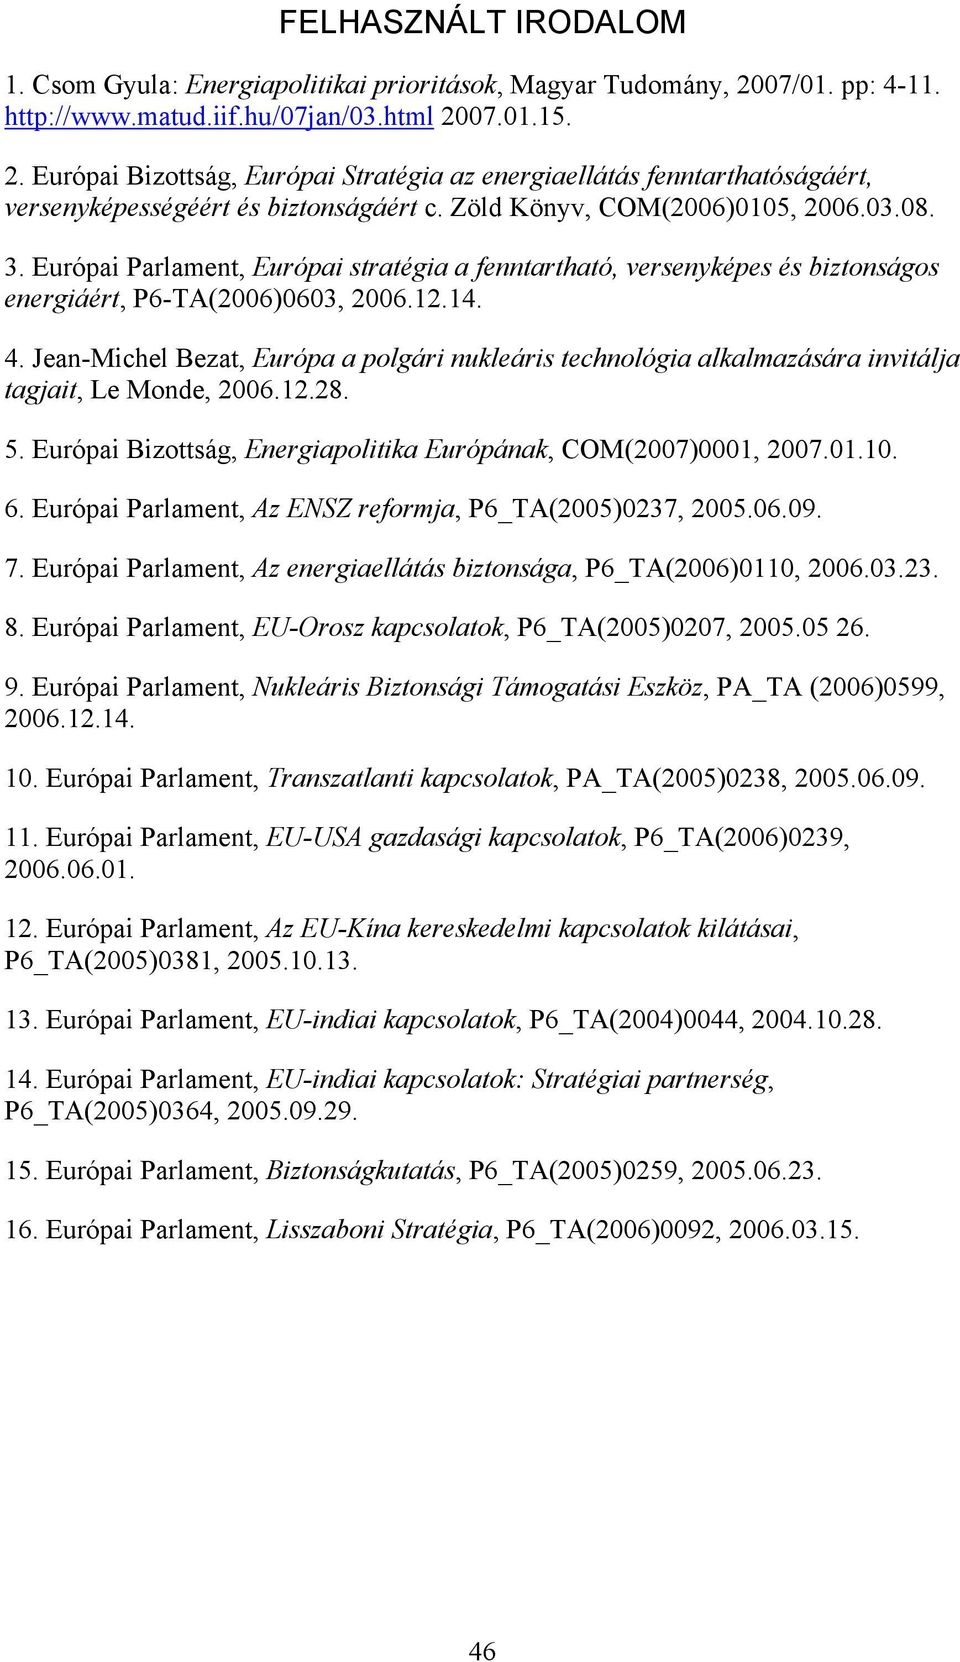 Zöld Könyv, COM(2006)0105, 2006.03.08. 3. Európai Parlament, Európai stratégia a fenntartható, versenyképes és biztonságos energiáért, P6-TA(2006)0603, 2006.12.14. 4.